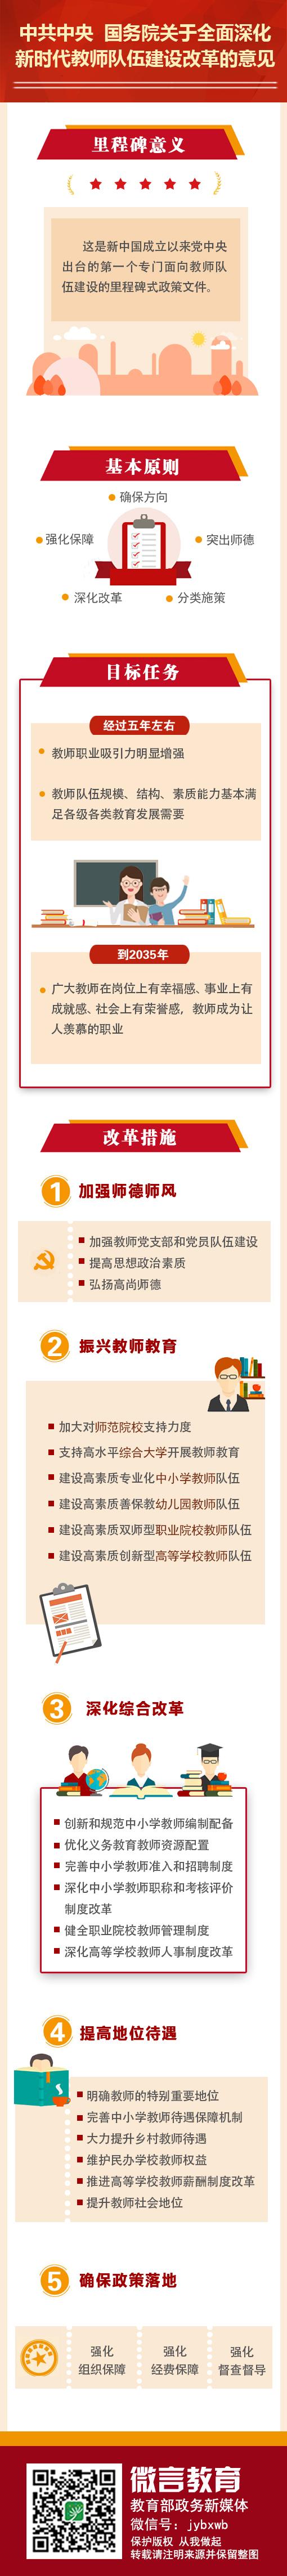 中共中央 国务院关于全面深化新时代教师队伍建设改革的意见